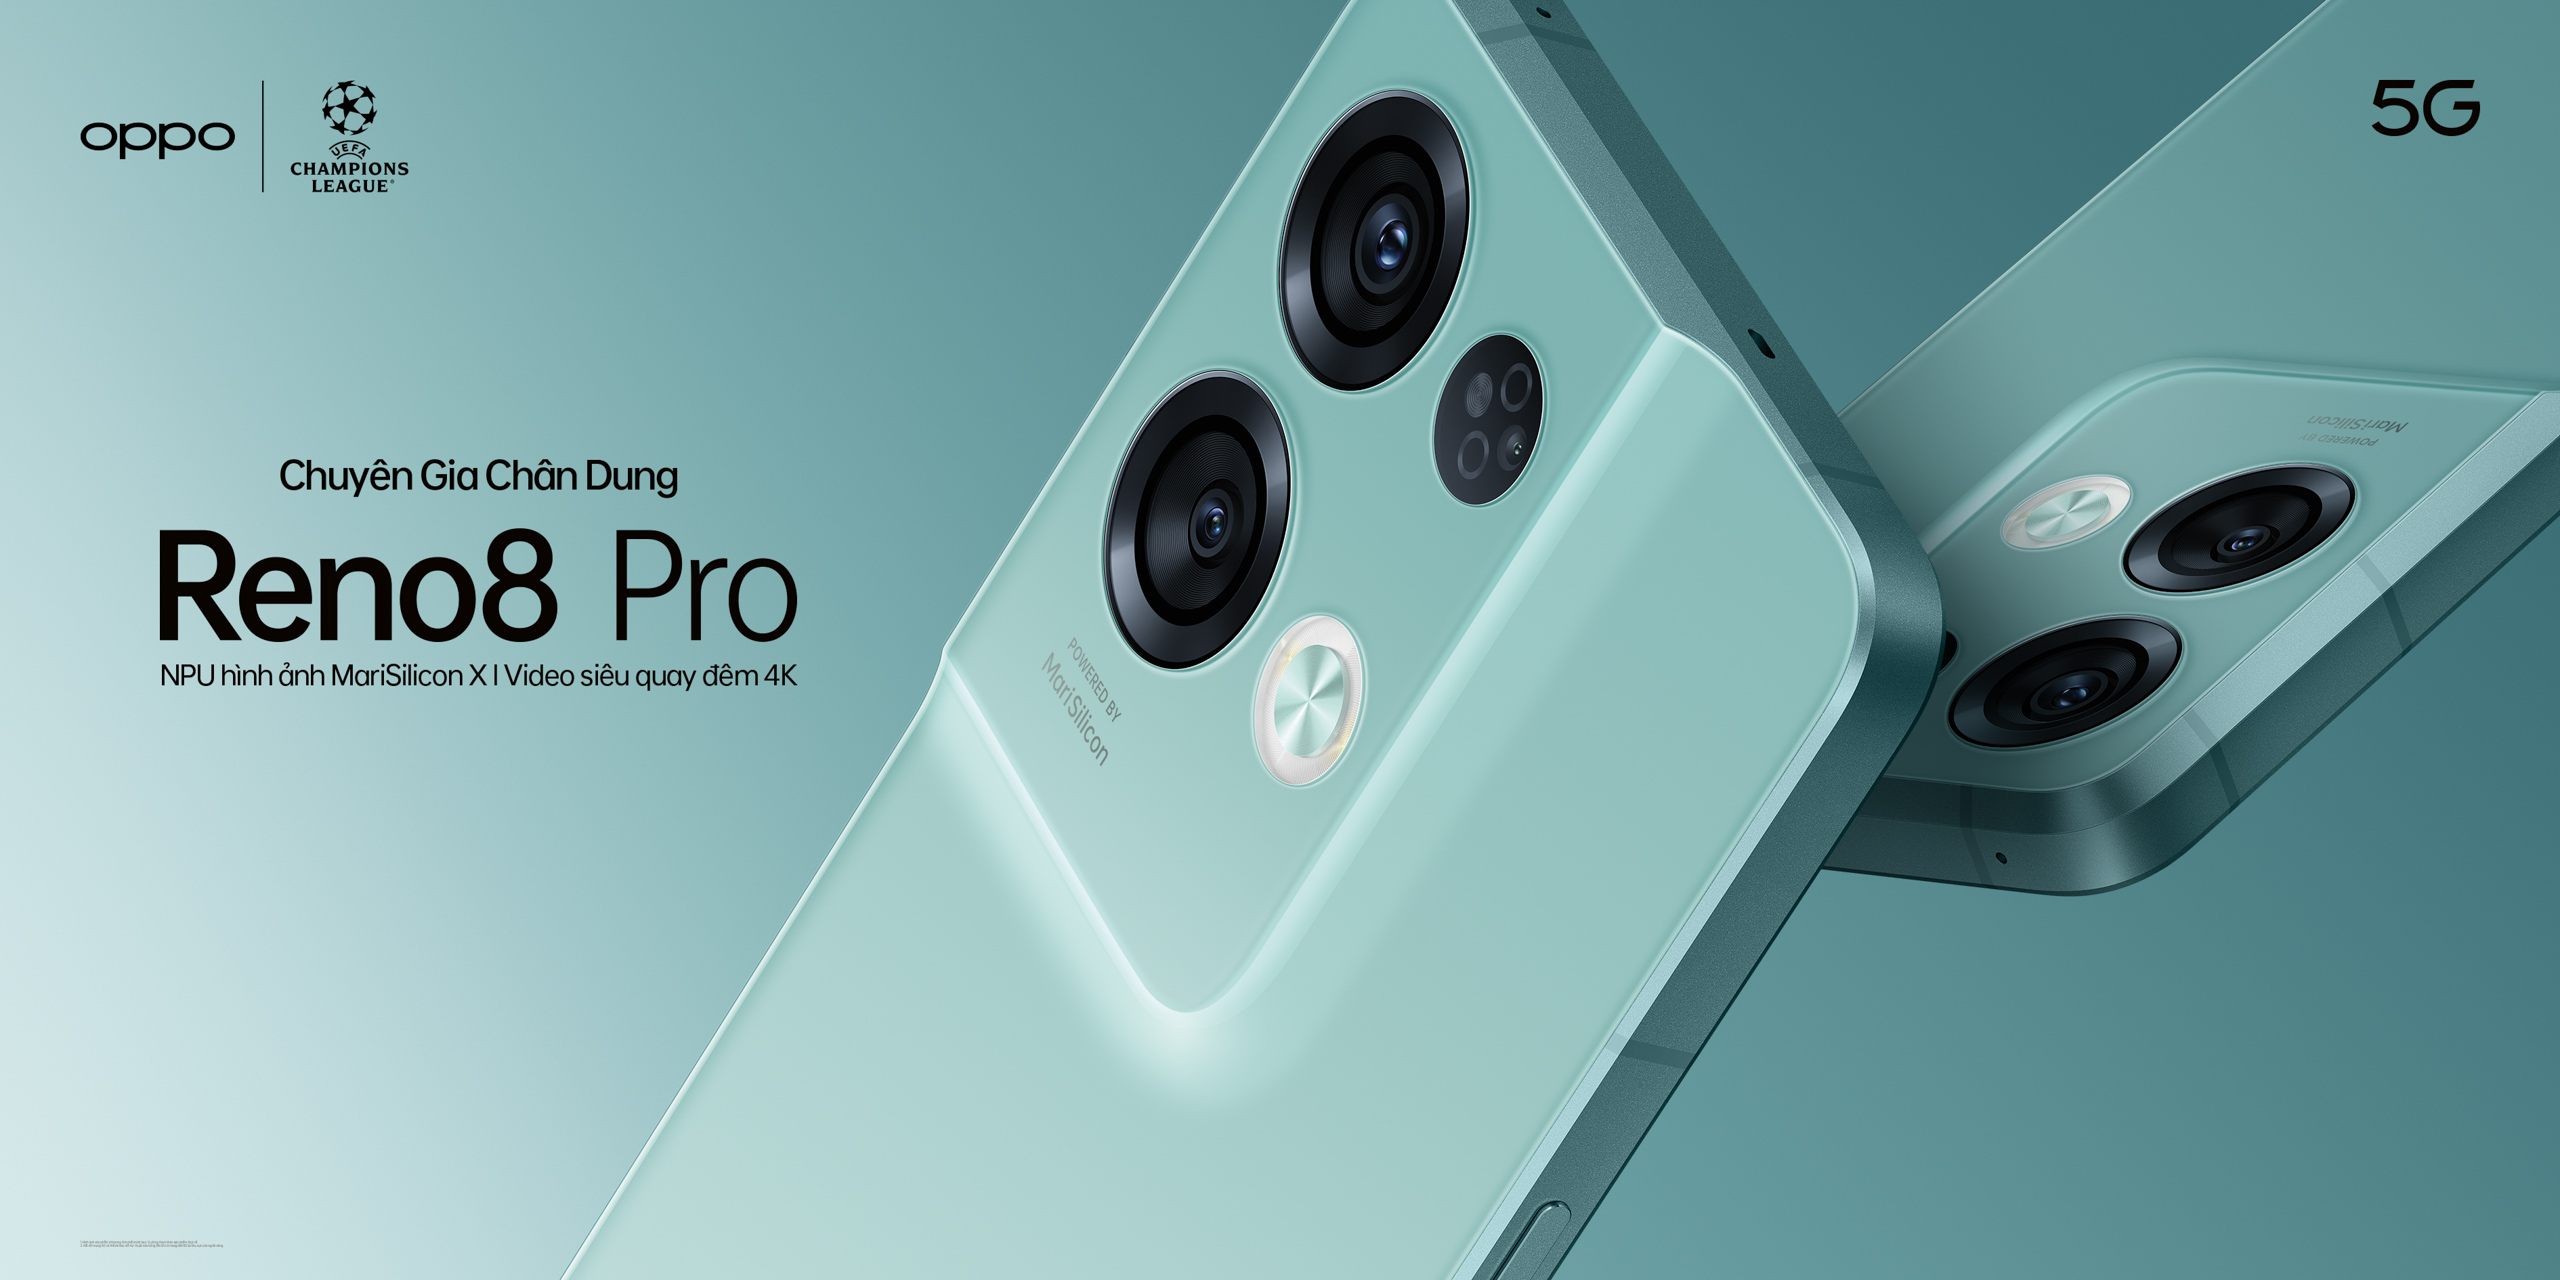 OPPO Reno8 Pro 5G chính thức ra mắt “Chuyên gia chân dung đẳng cấp Pro” được hỗ trợ bởi công nghệ siêu chip kép